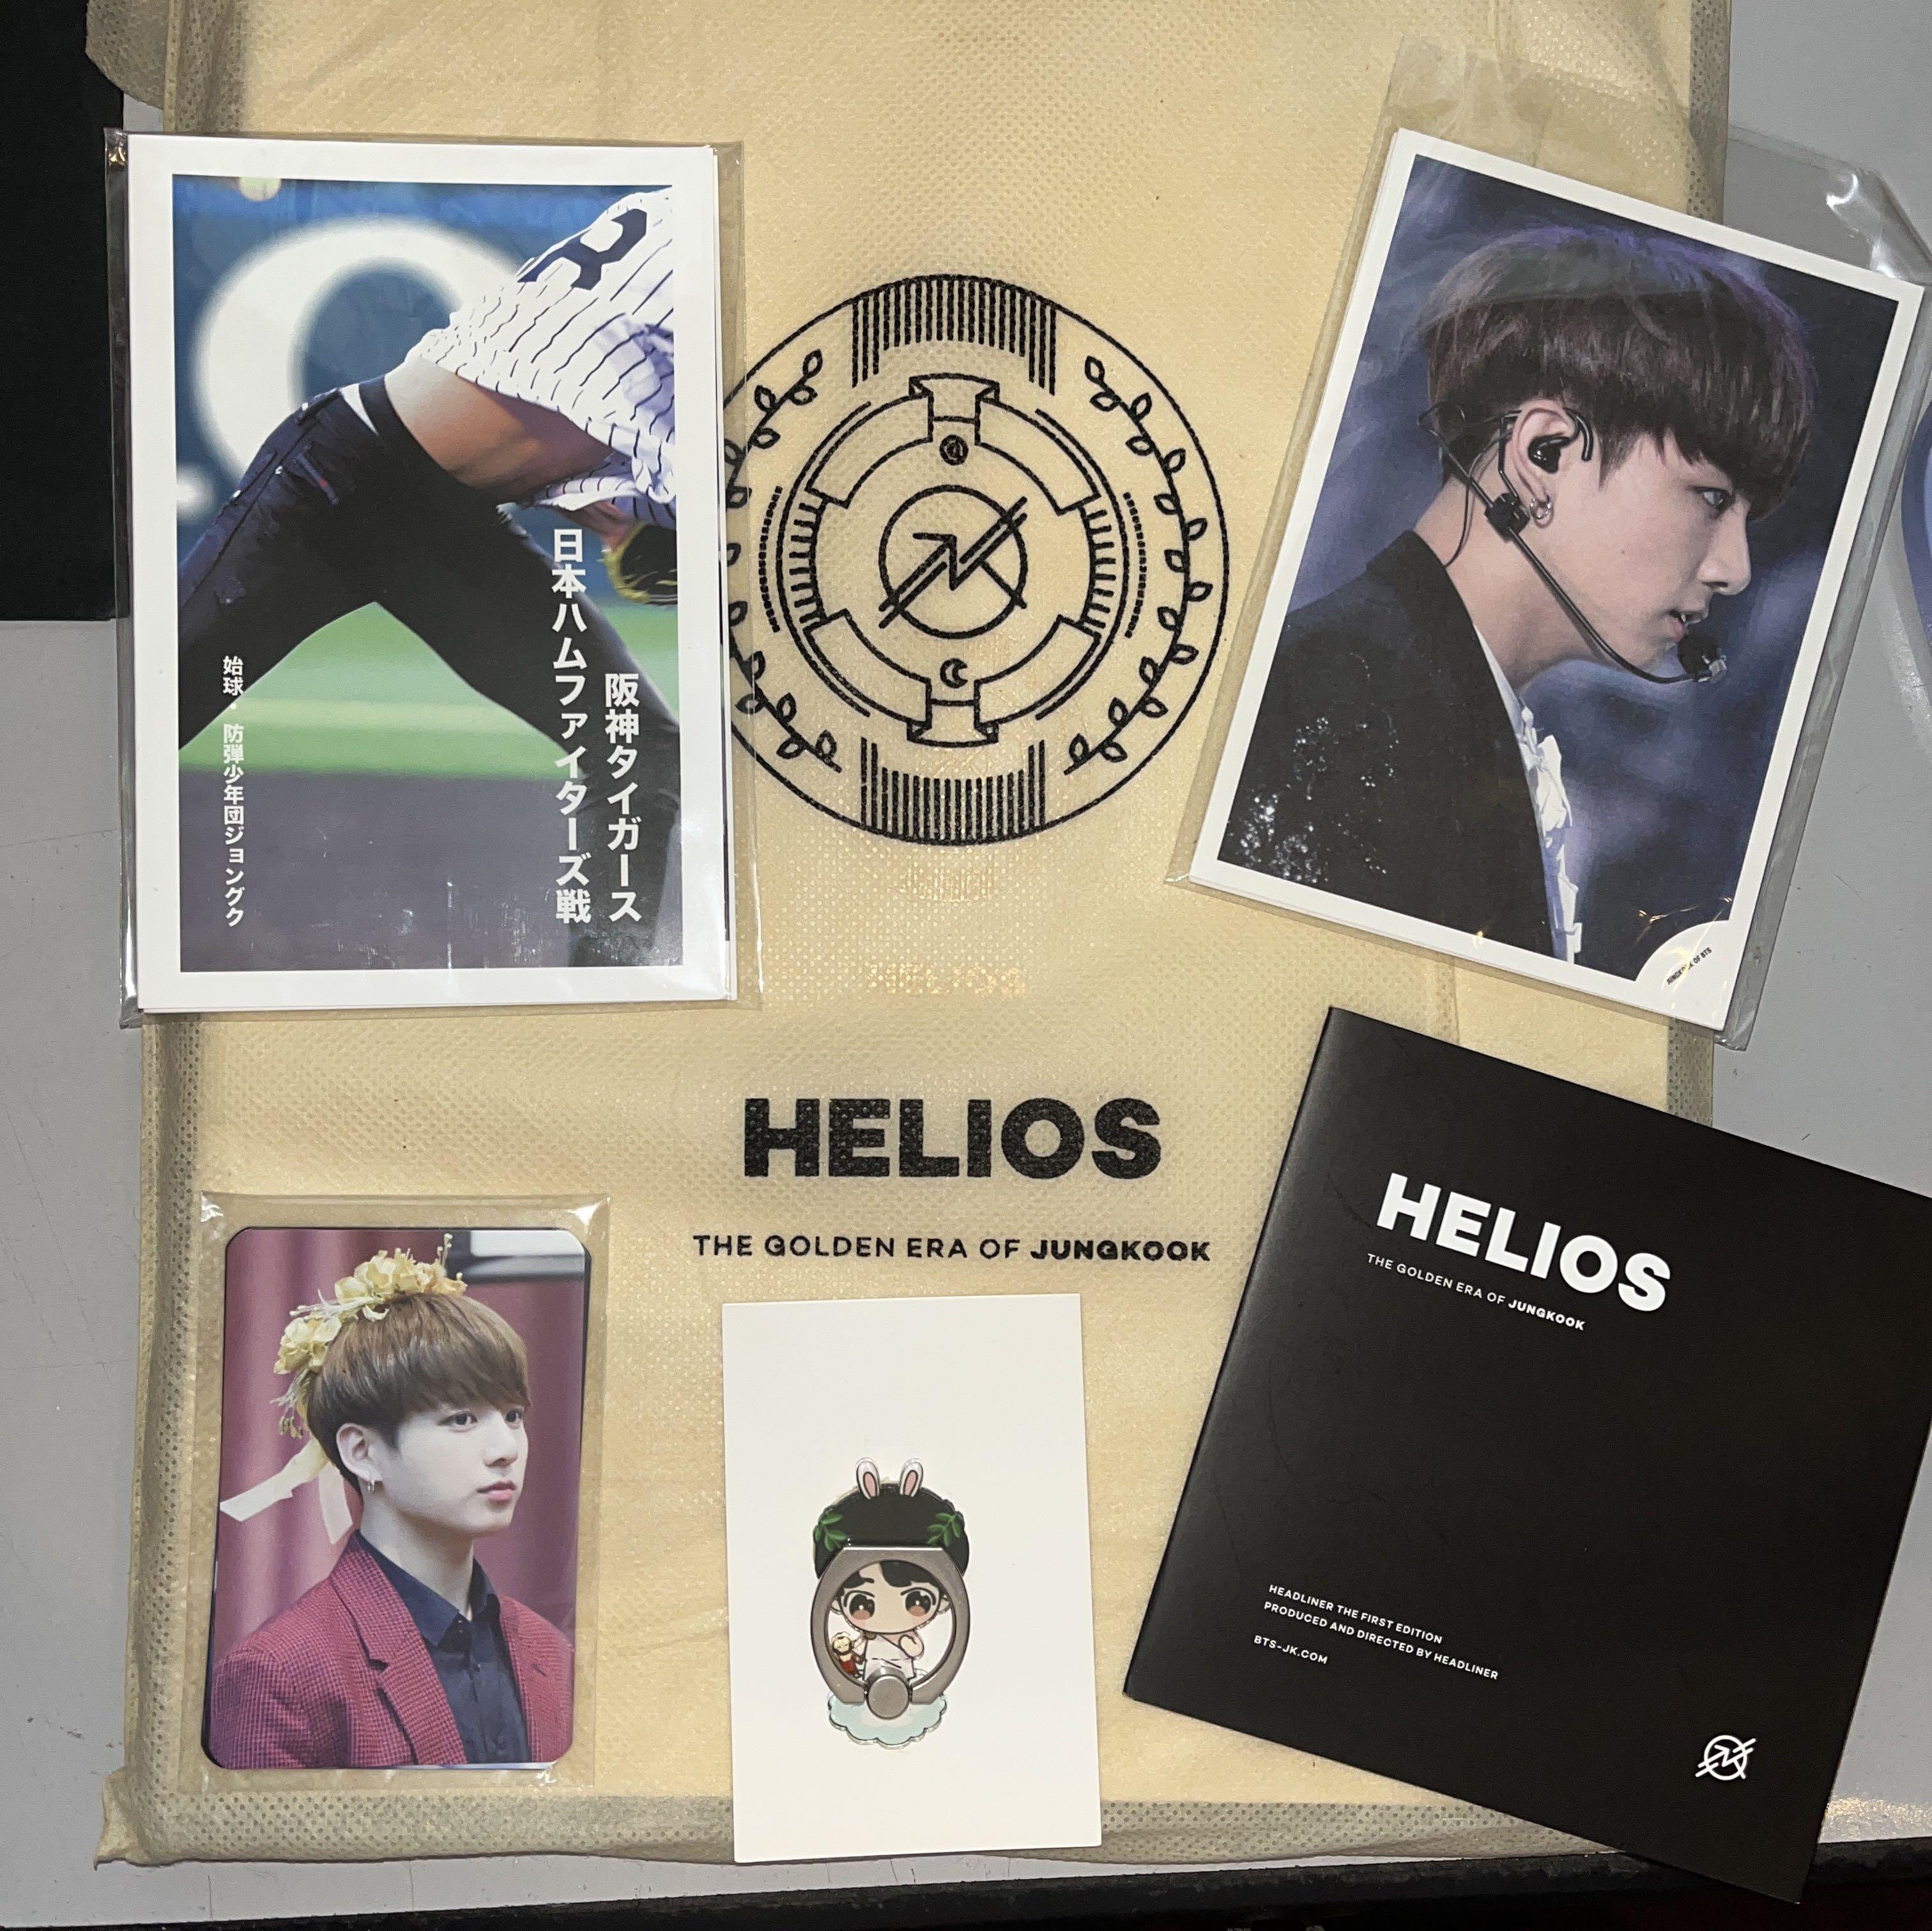 WTS BTS Jungkook Helios Photobook + DVD by Headliner, Hobbies